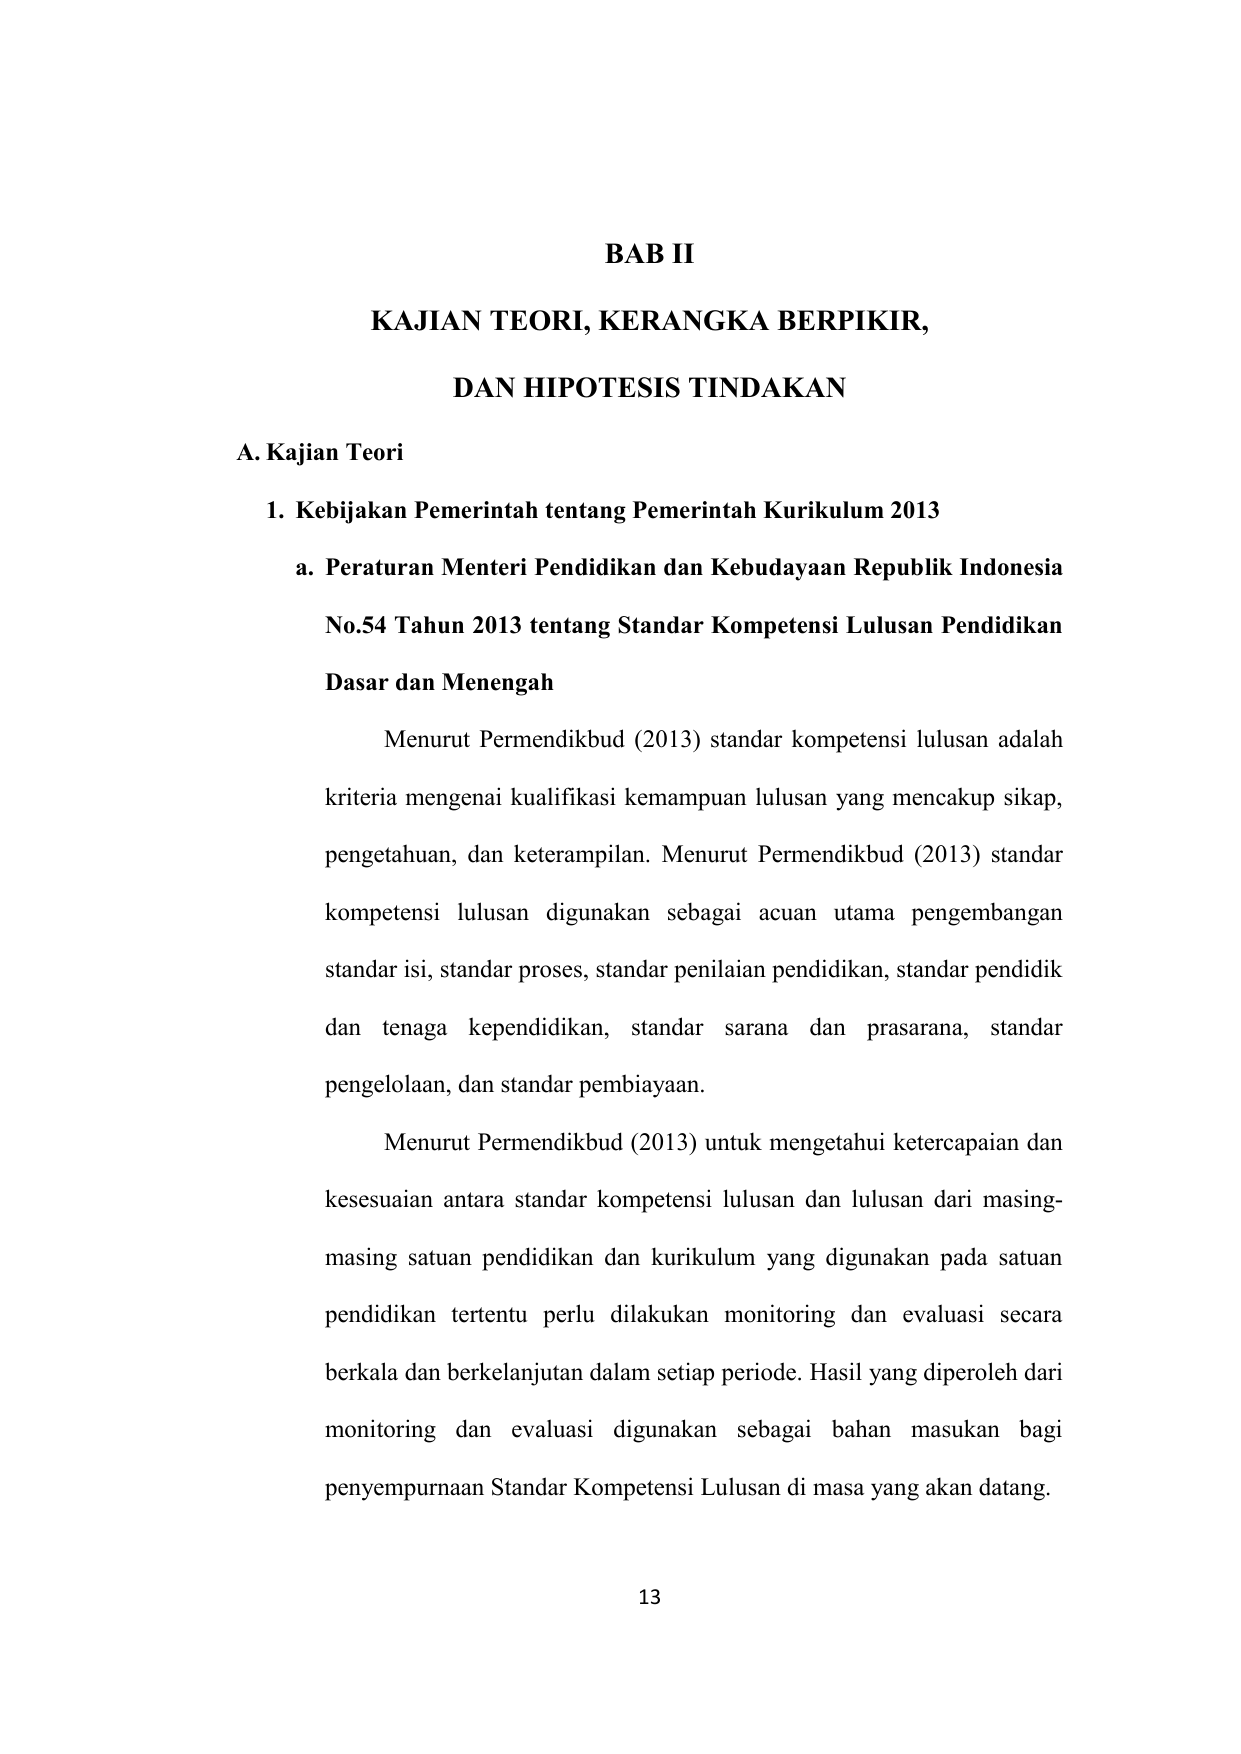 Kebijakan Pemerintah tentang Pemerintah Kurikulum 2013 a Peraturan Menteri Pendidikan dan Kebudayaan Republik Indonesia No 54 Tahun 2013 tentang Standar